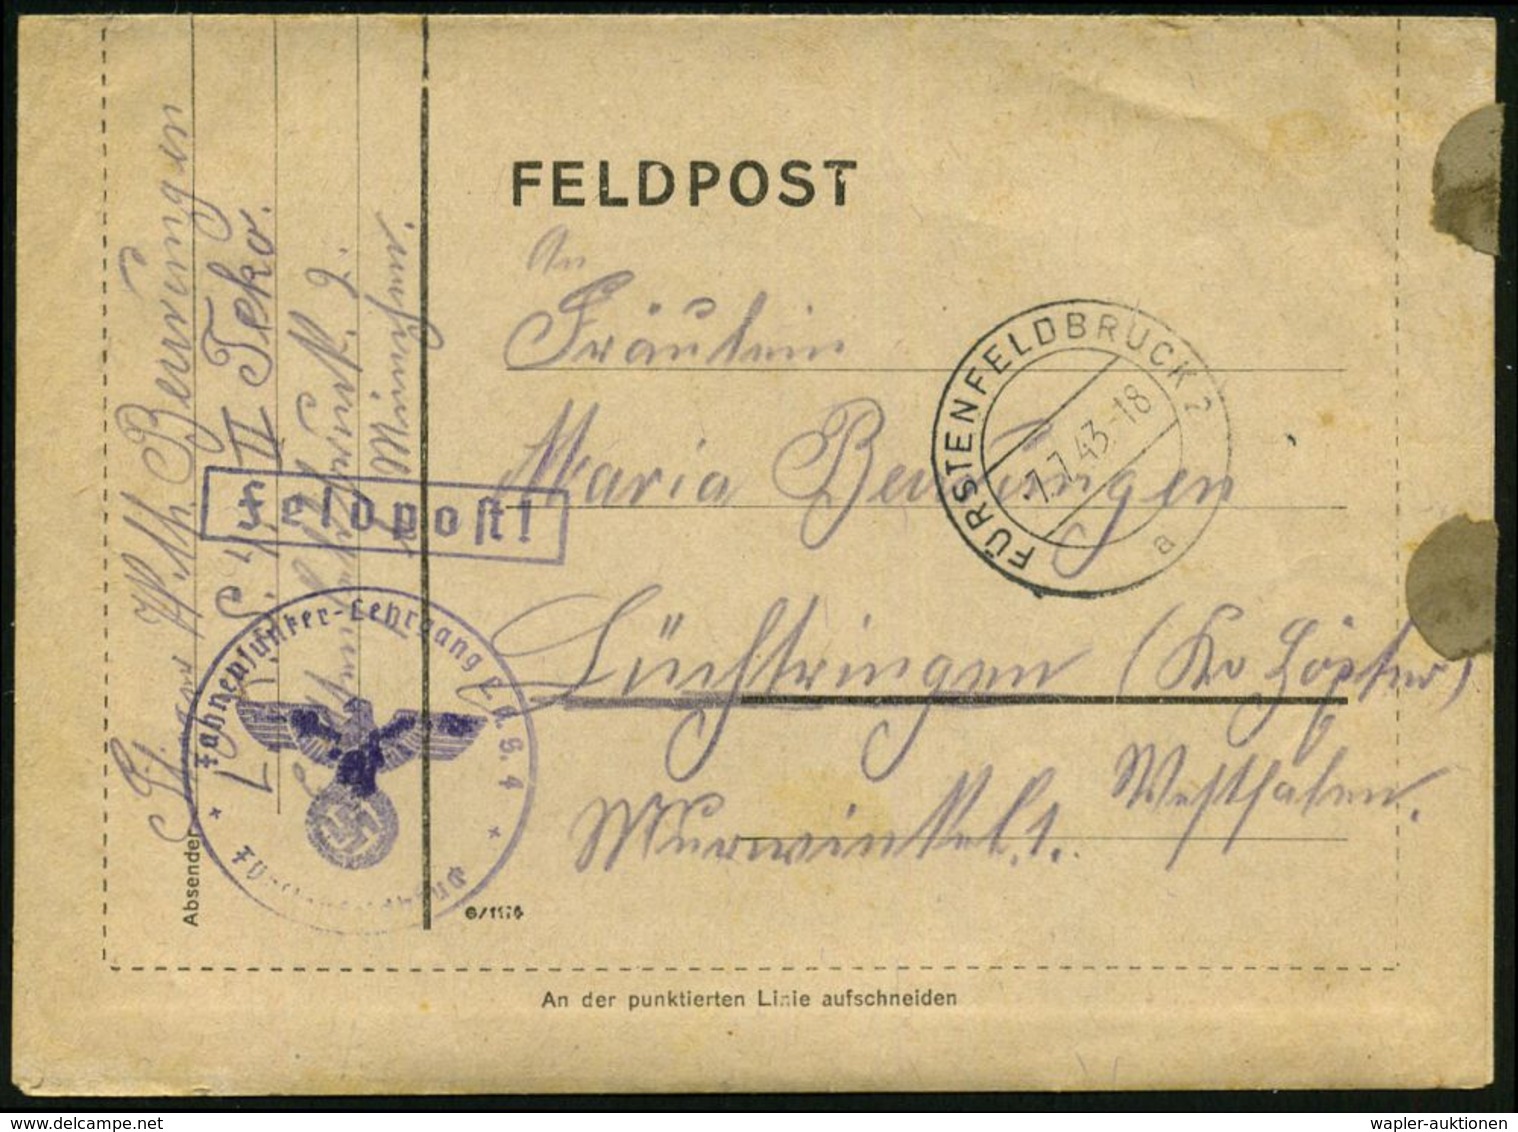 LUFTWAFFEN-FLUGSCHULEN & AKADEMIEN : FÜRSTENFELDBRUCK 2/ A 1943 (7.7.) 2K + Viol. 1K-HdN: Fahnenjunker-Lehrgang L.(uft)  - Avions